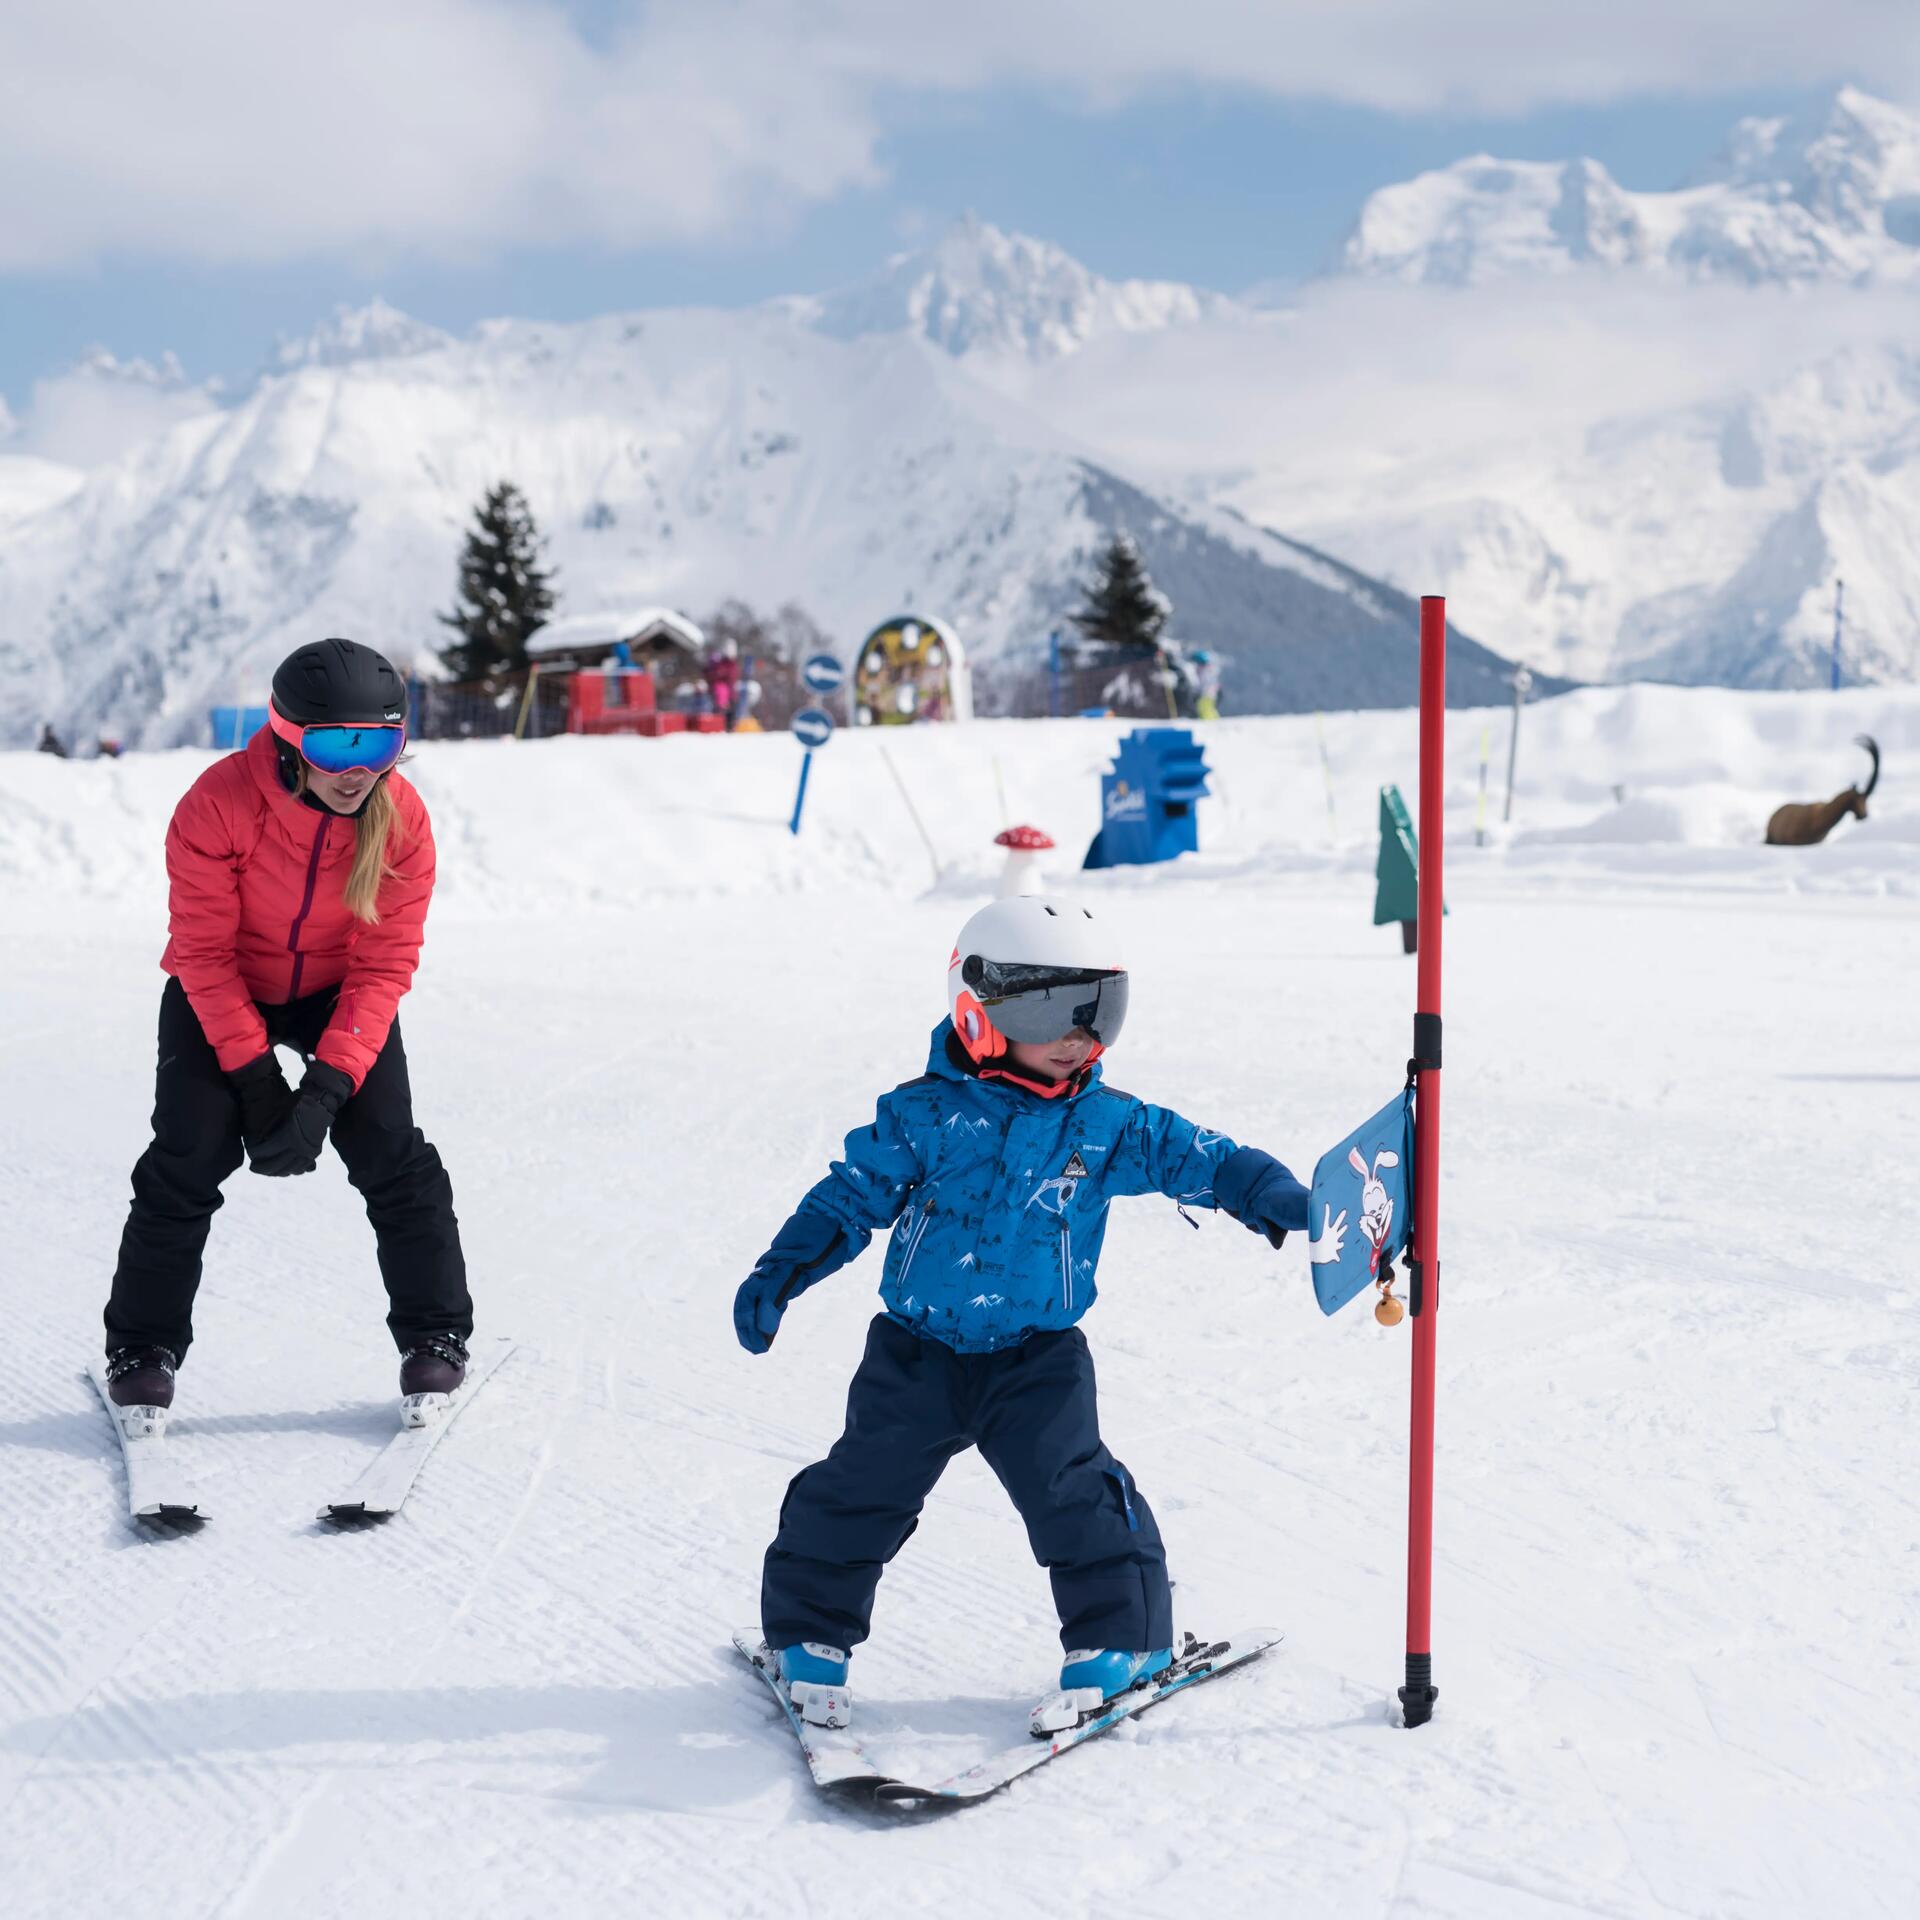 Hur väljer jag slalomskidor till mitt barn?